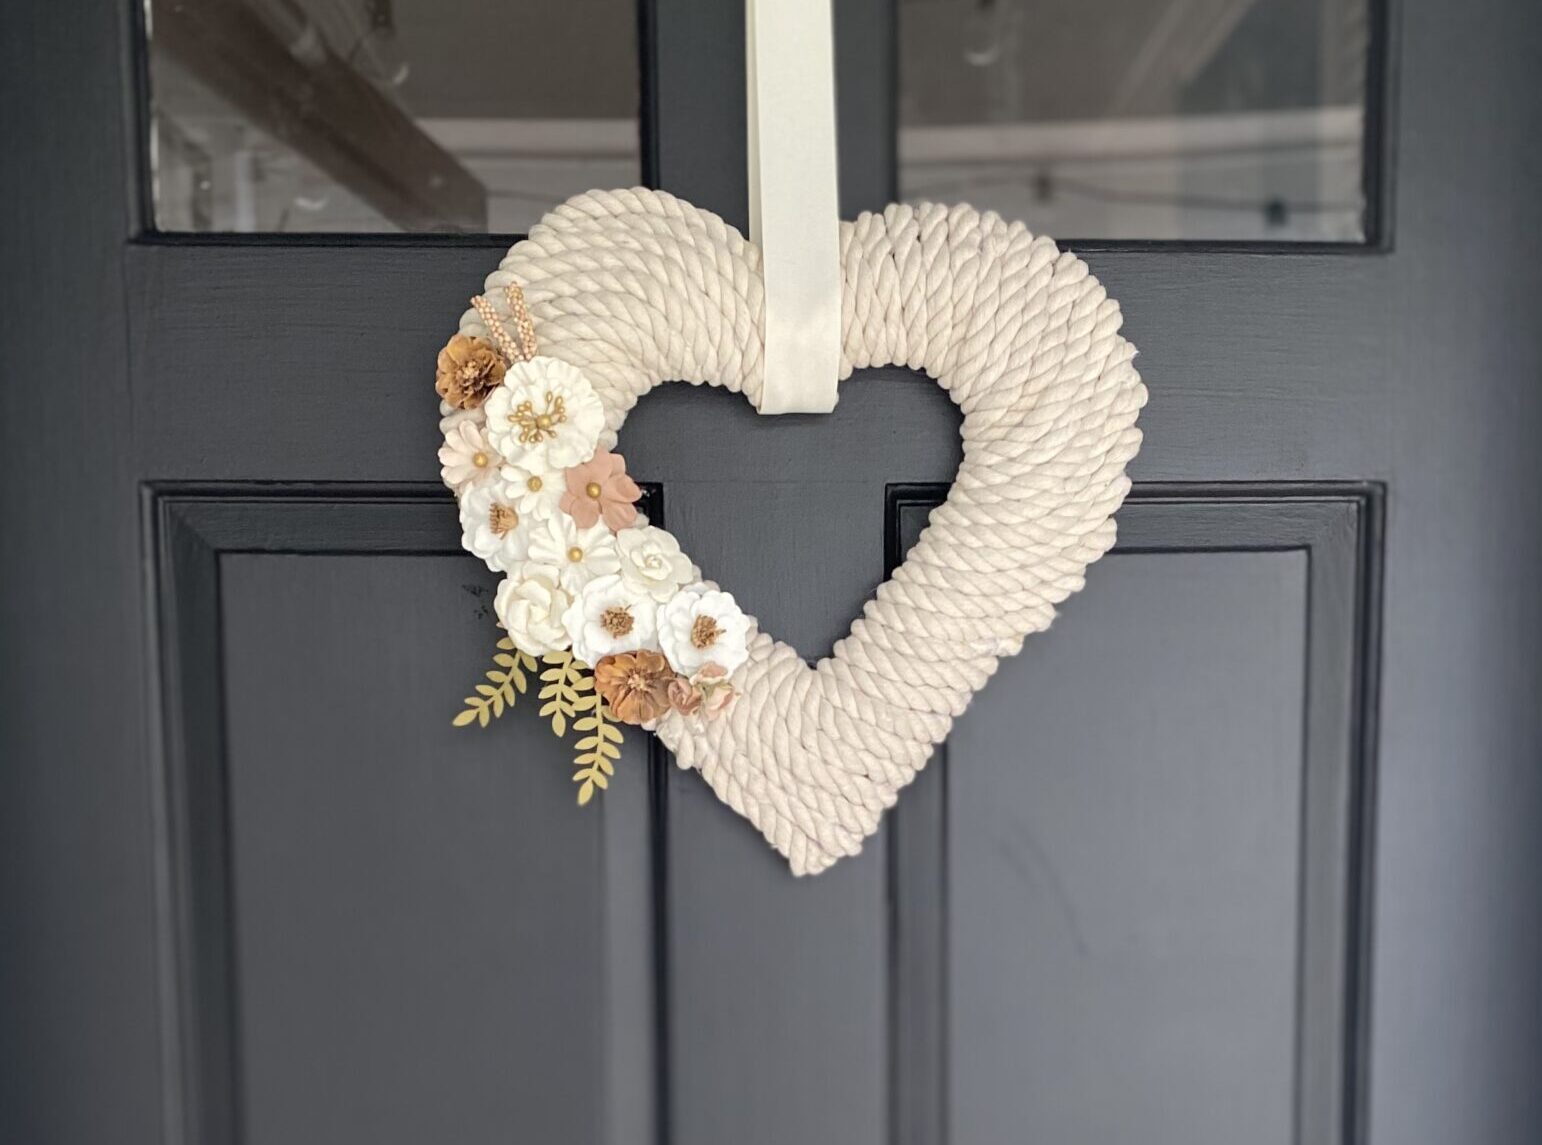 heart wreath on door for Valentine's day